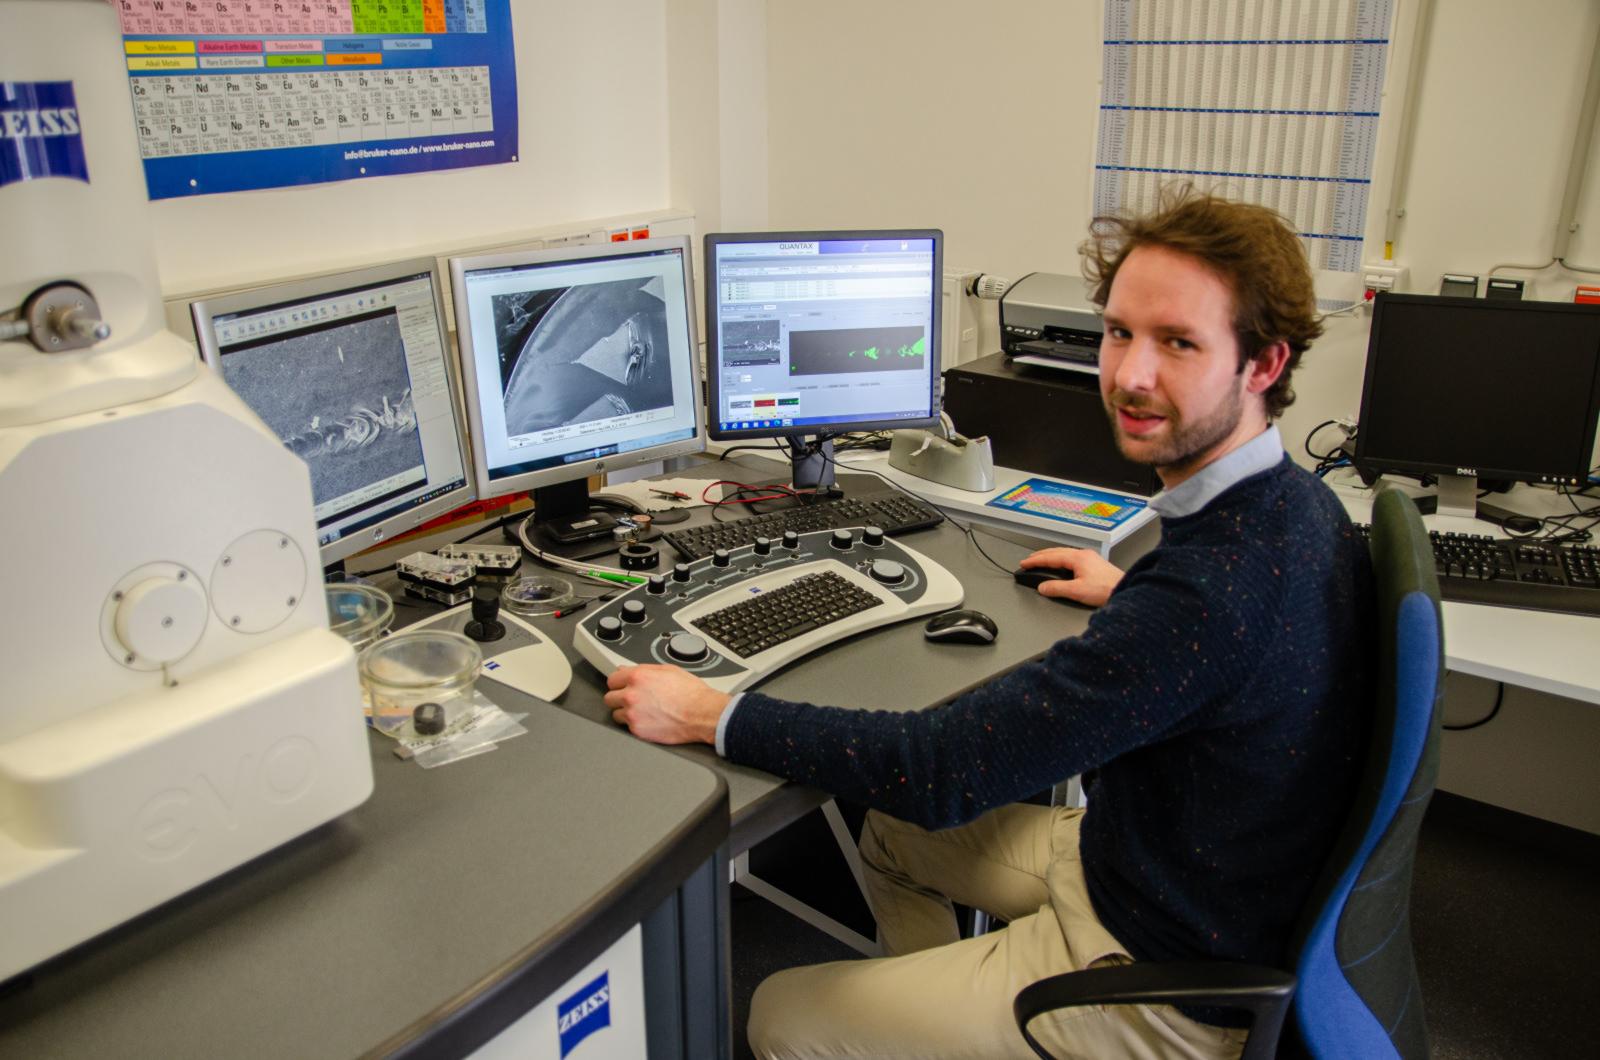 Er untersucht die Probe am Rasterelektronenmikroskop im Labor für Werkstofftechnik auf dem Steinfurter Campus. (Foto: FH Münster/Frederik Tebbe)